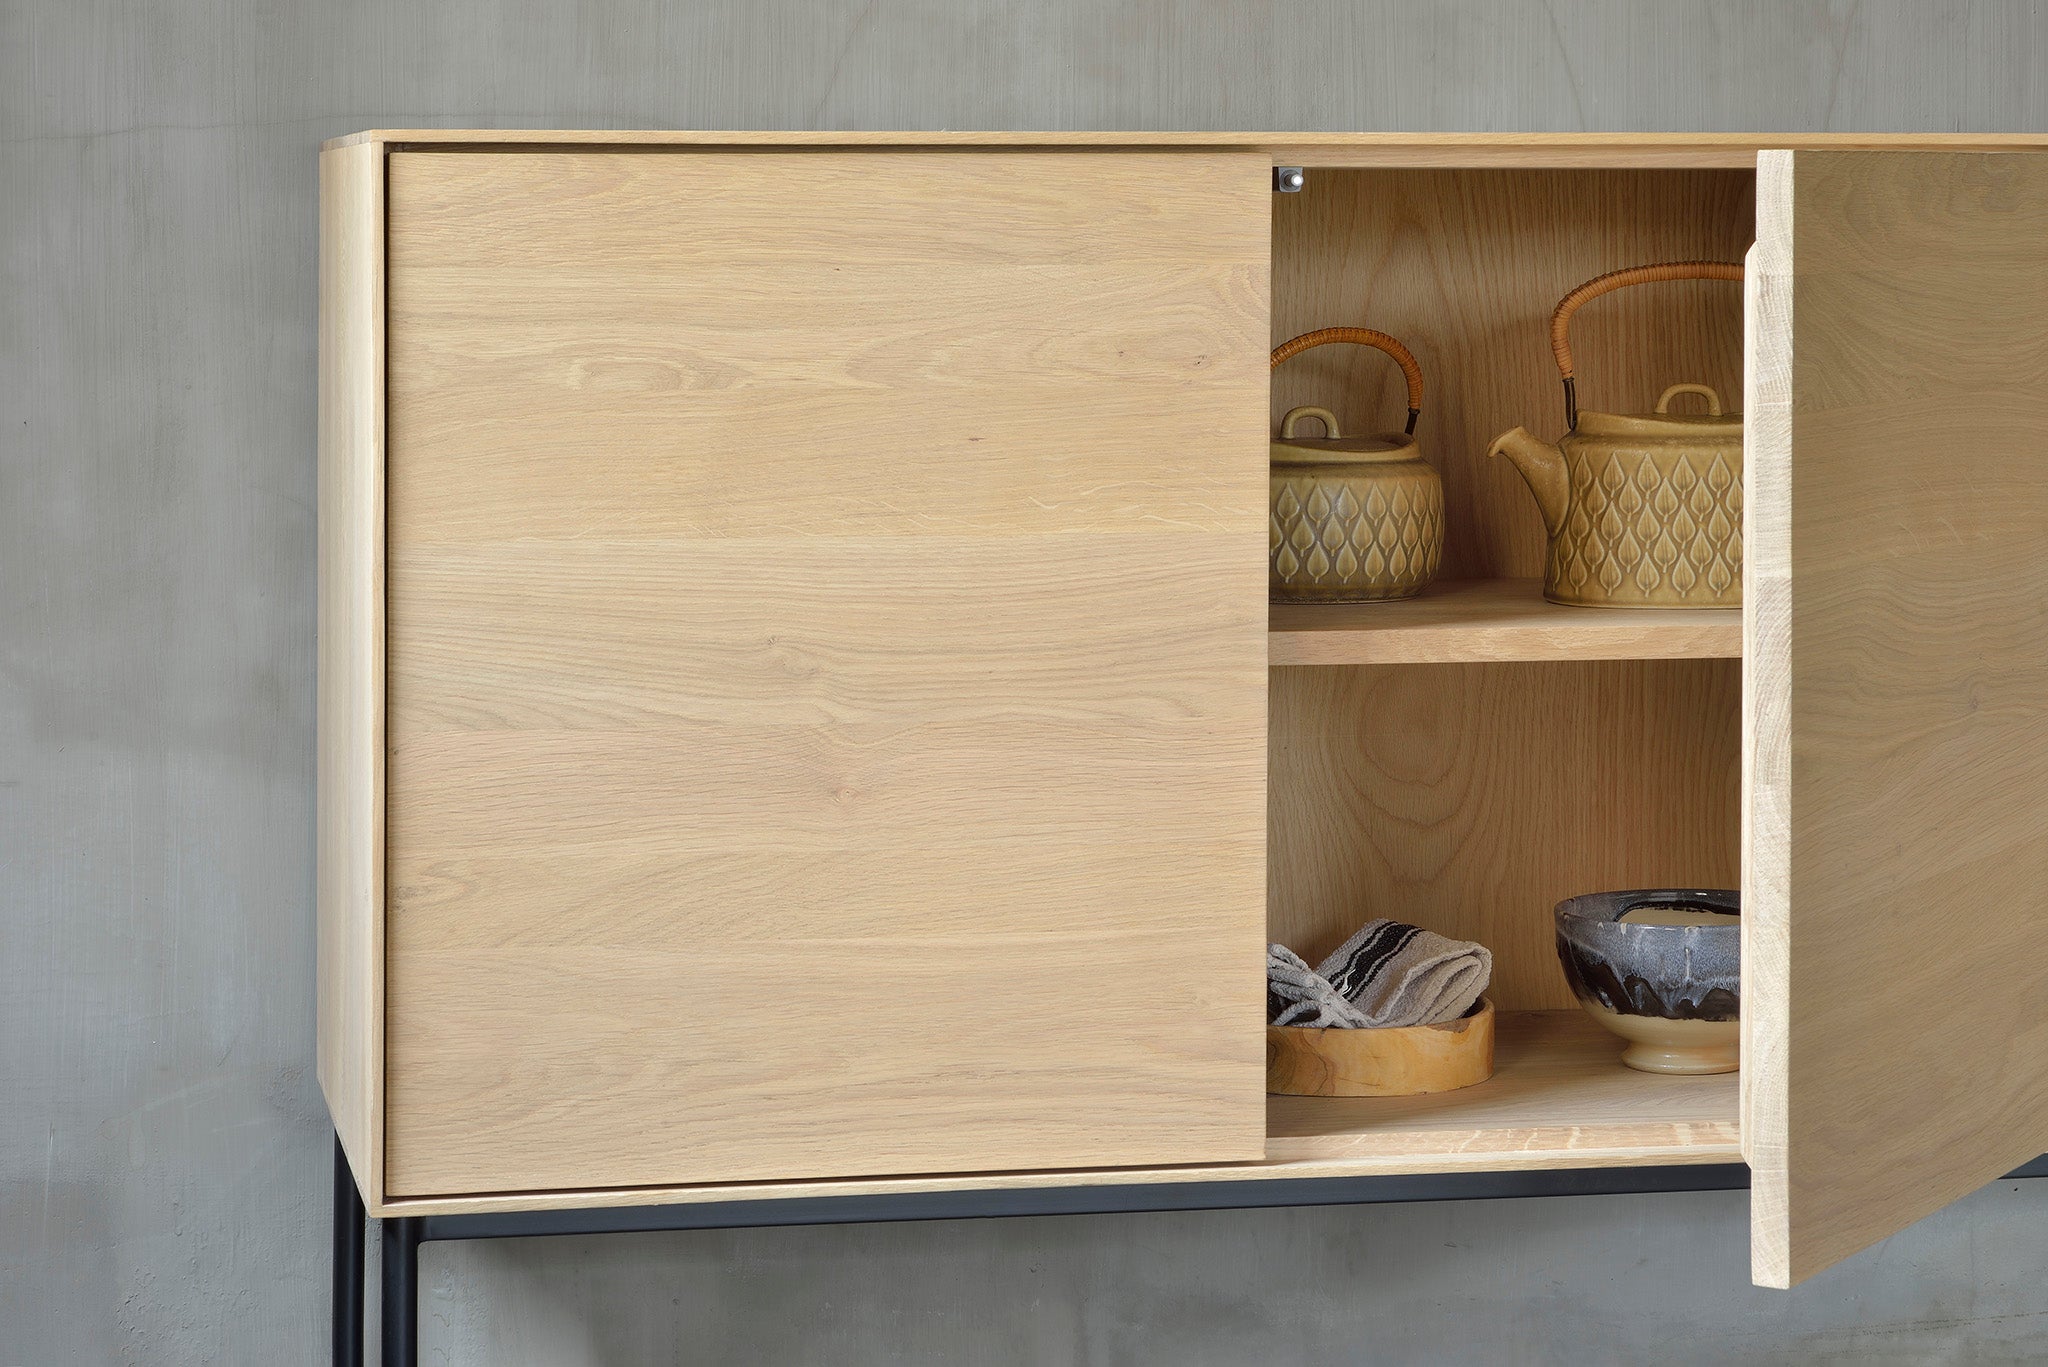 比利時原裝進口實木傢俬 - 收納系列 - Whitebird系列橡木三門餐具櫃